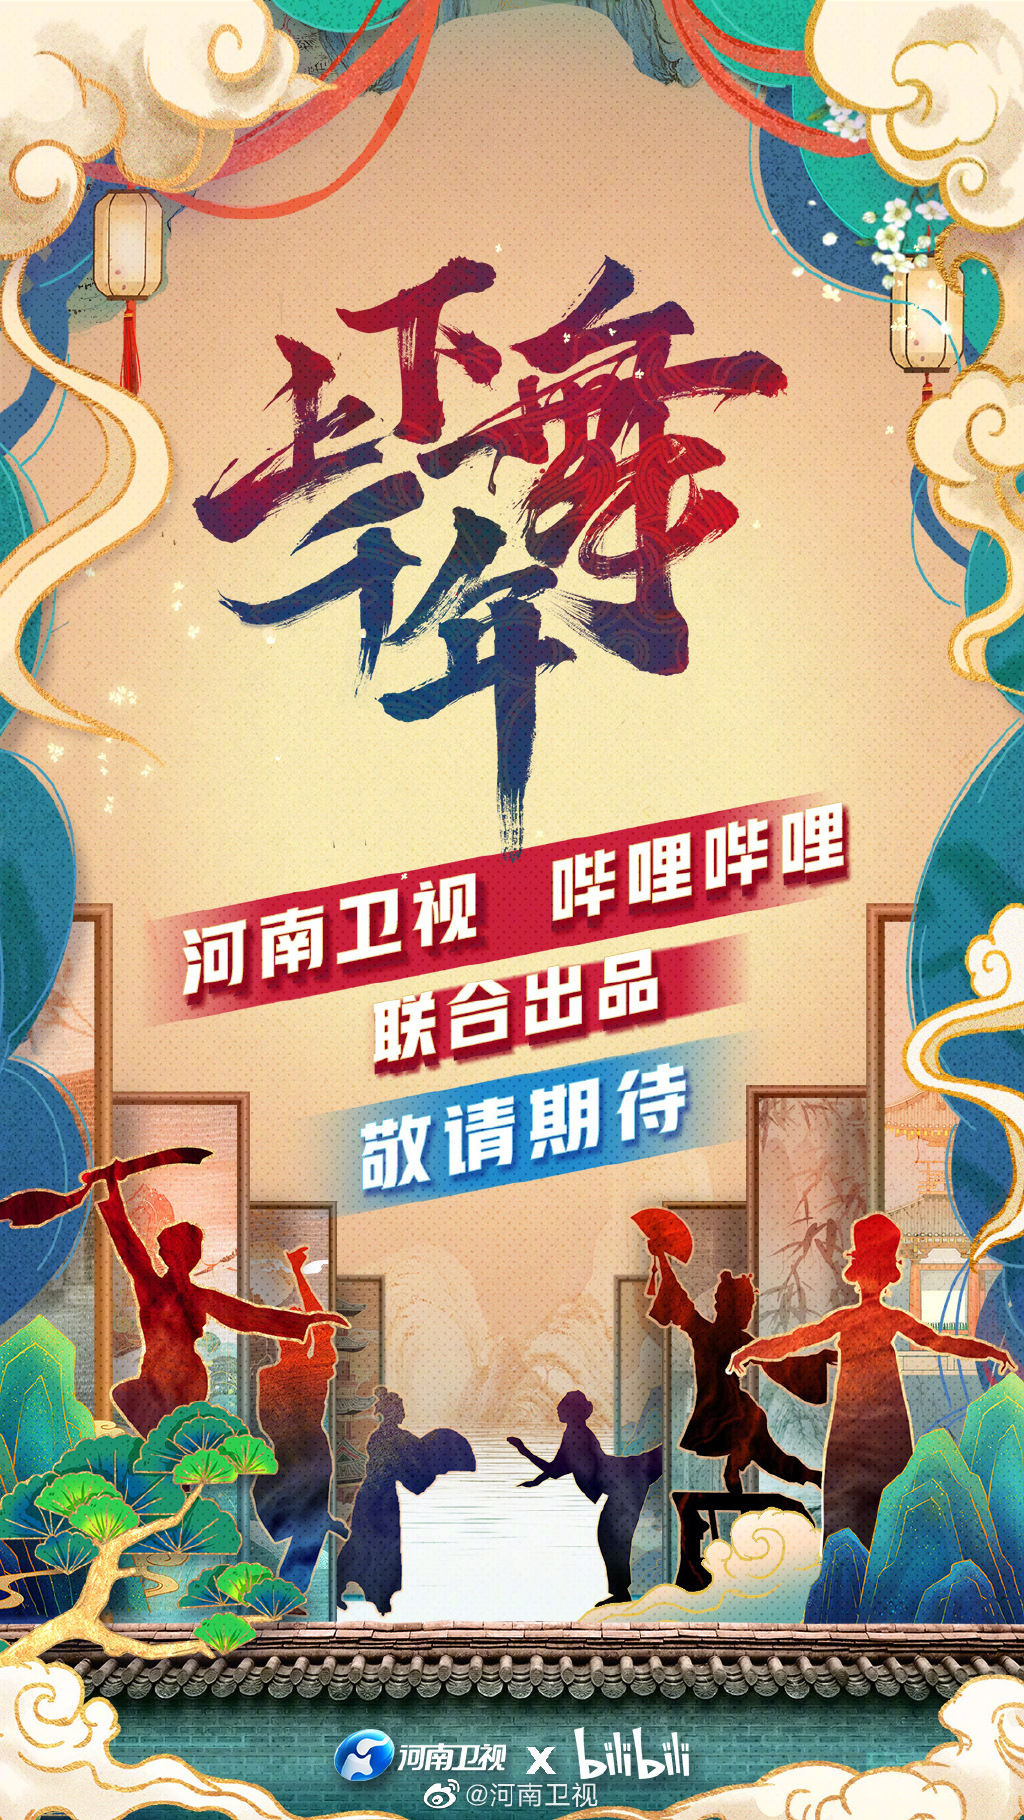 河南卫视将和b站合作舞蹈新综艺《上下舞千年》,并发布节目海报